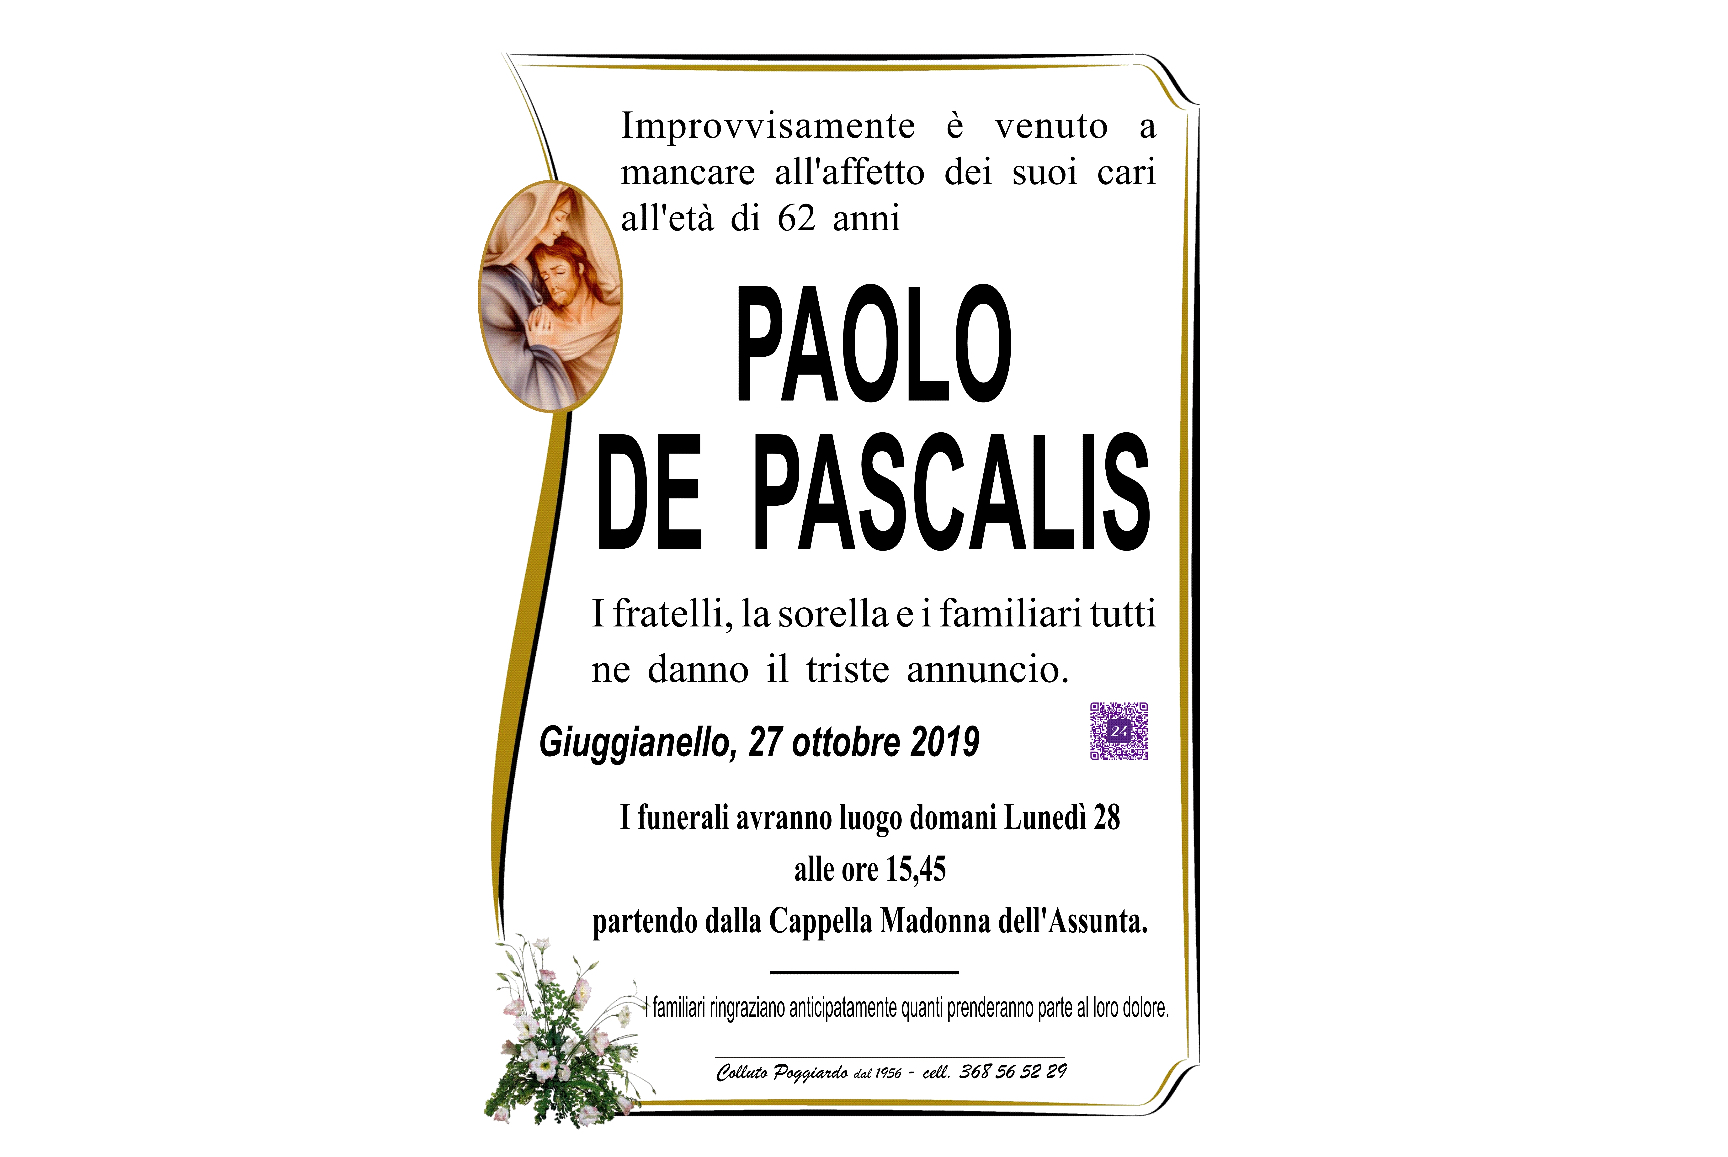 Paolo De Pascalis